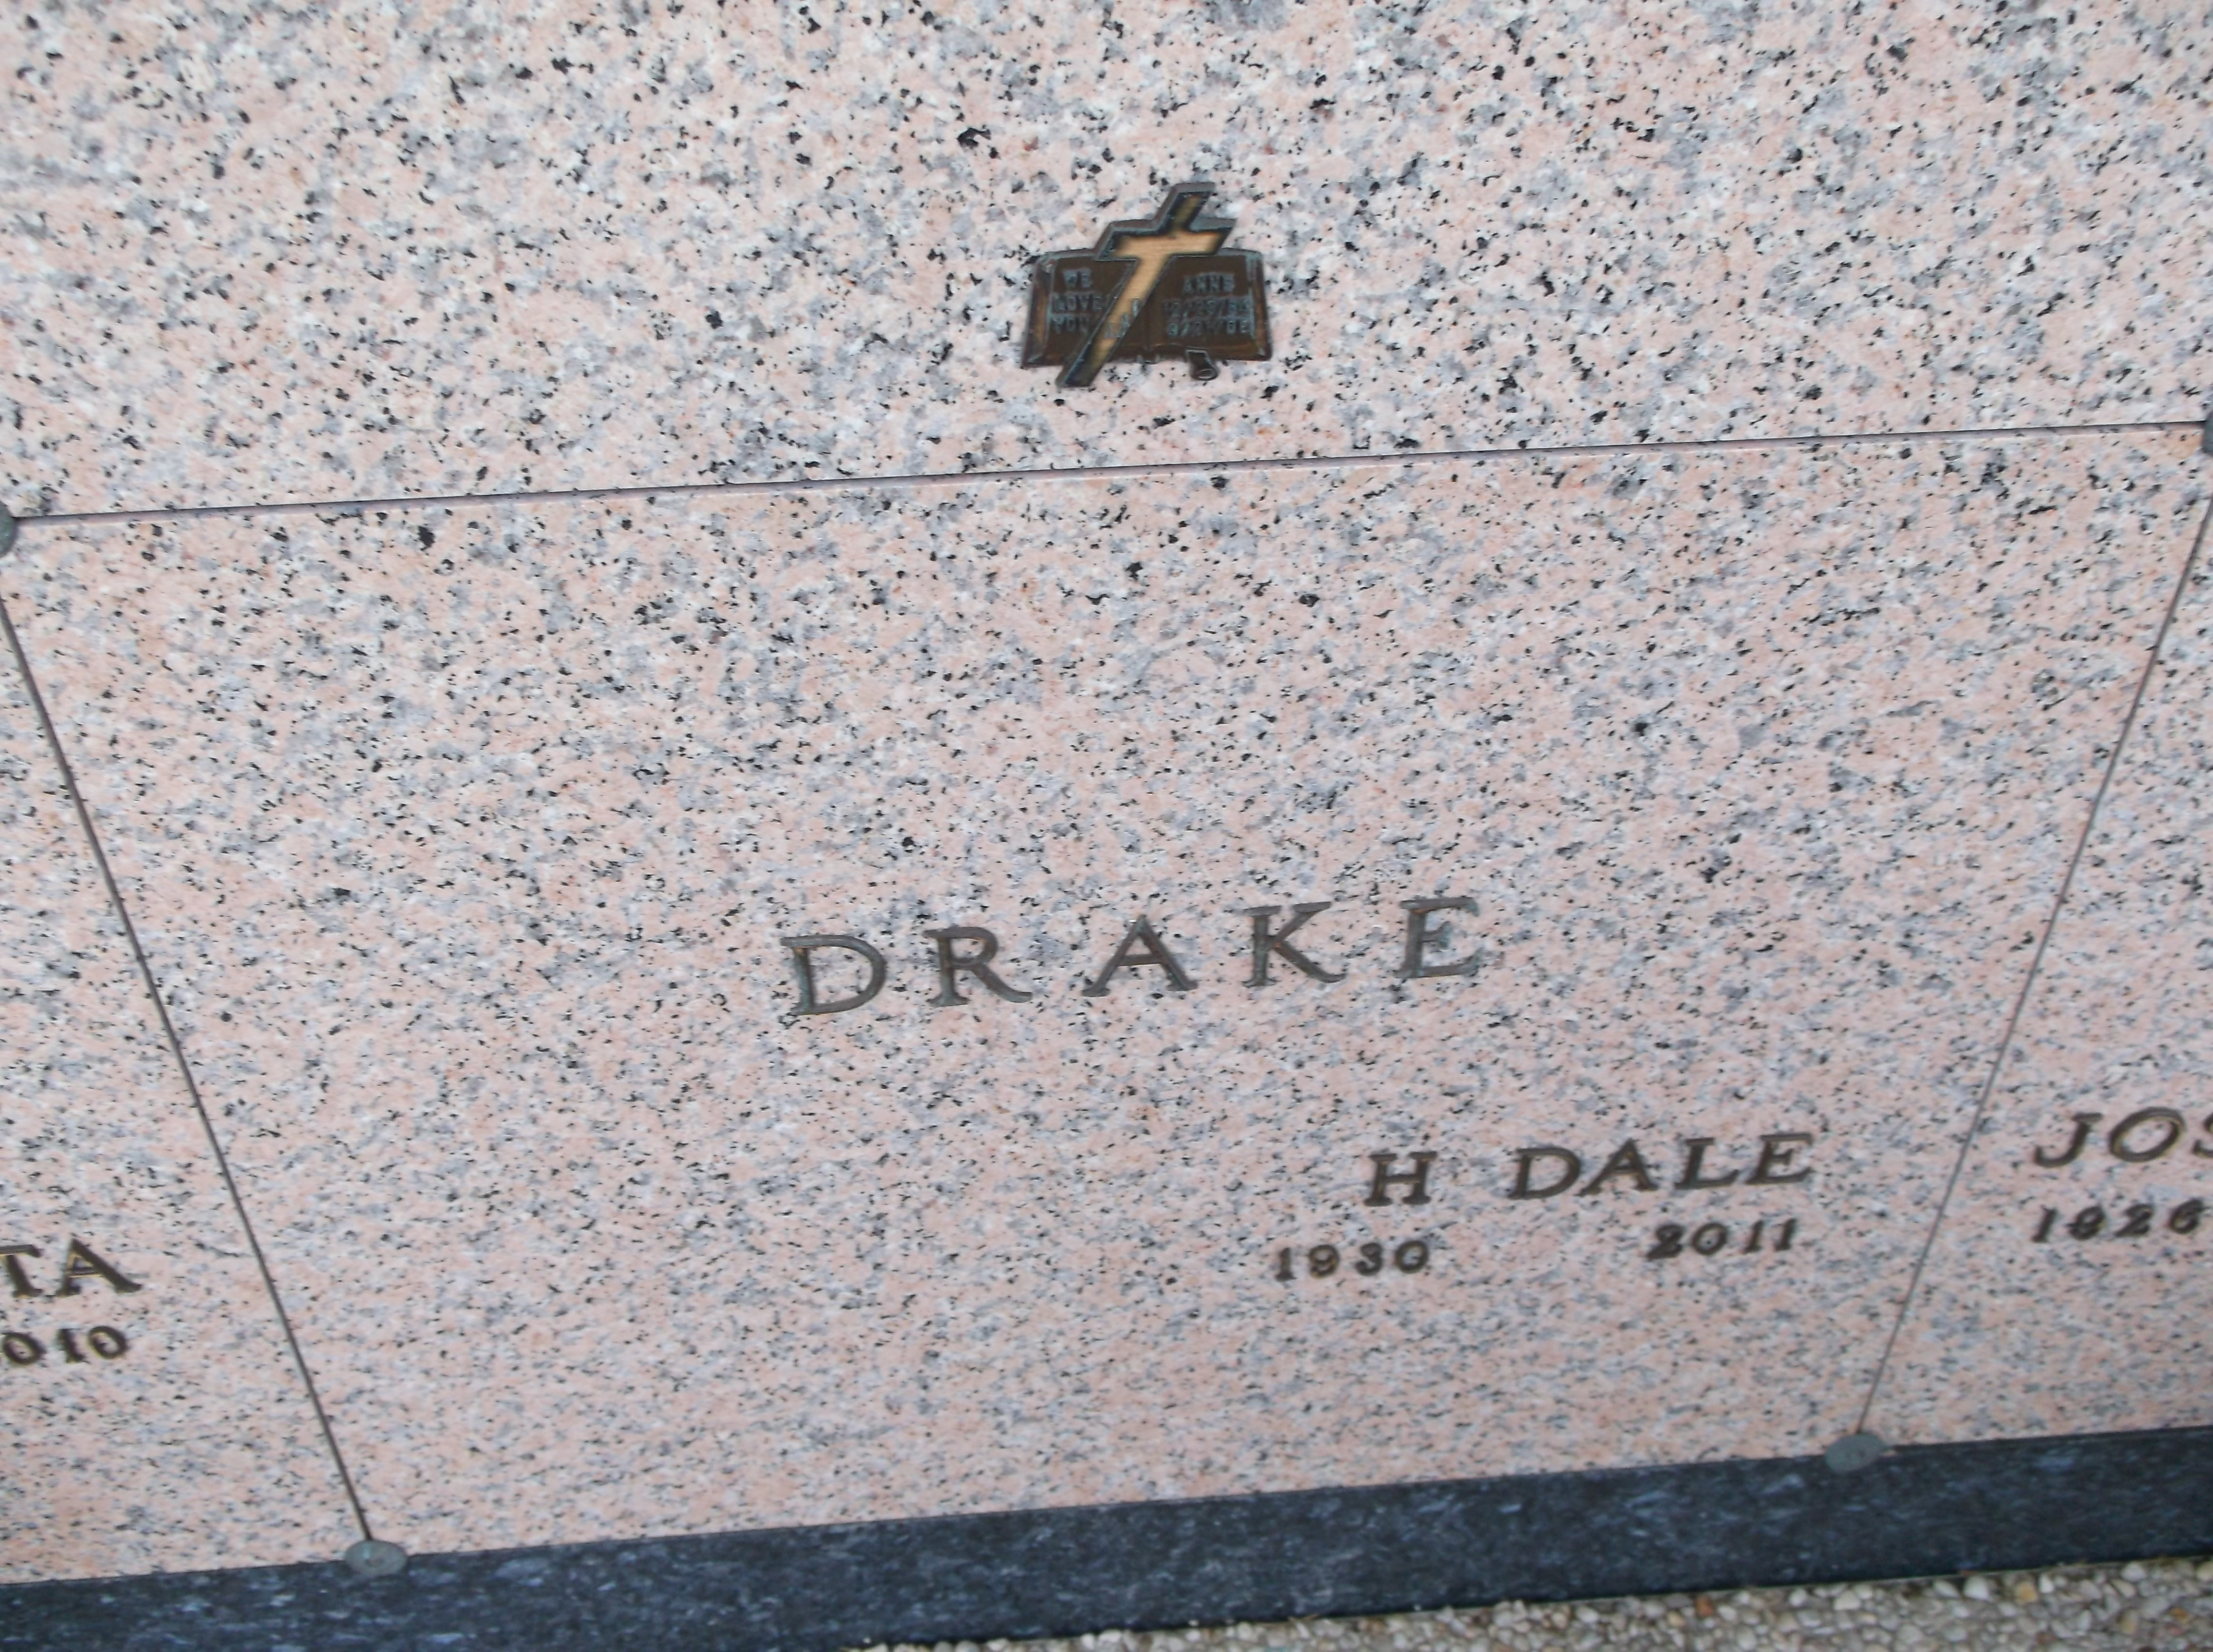 H Dale Drake